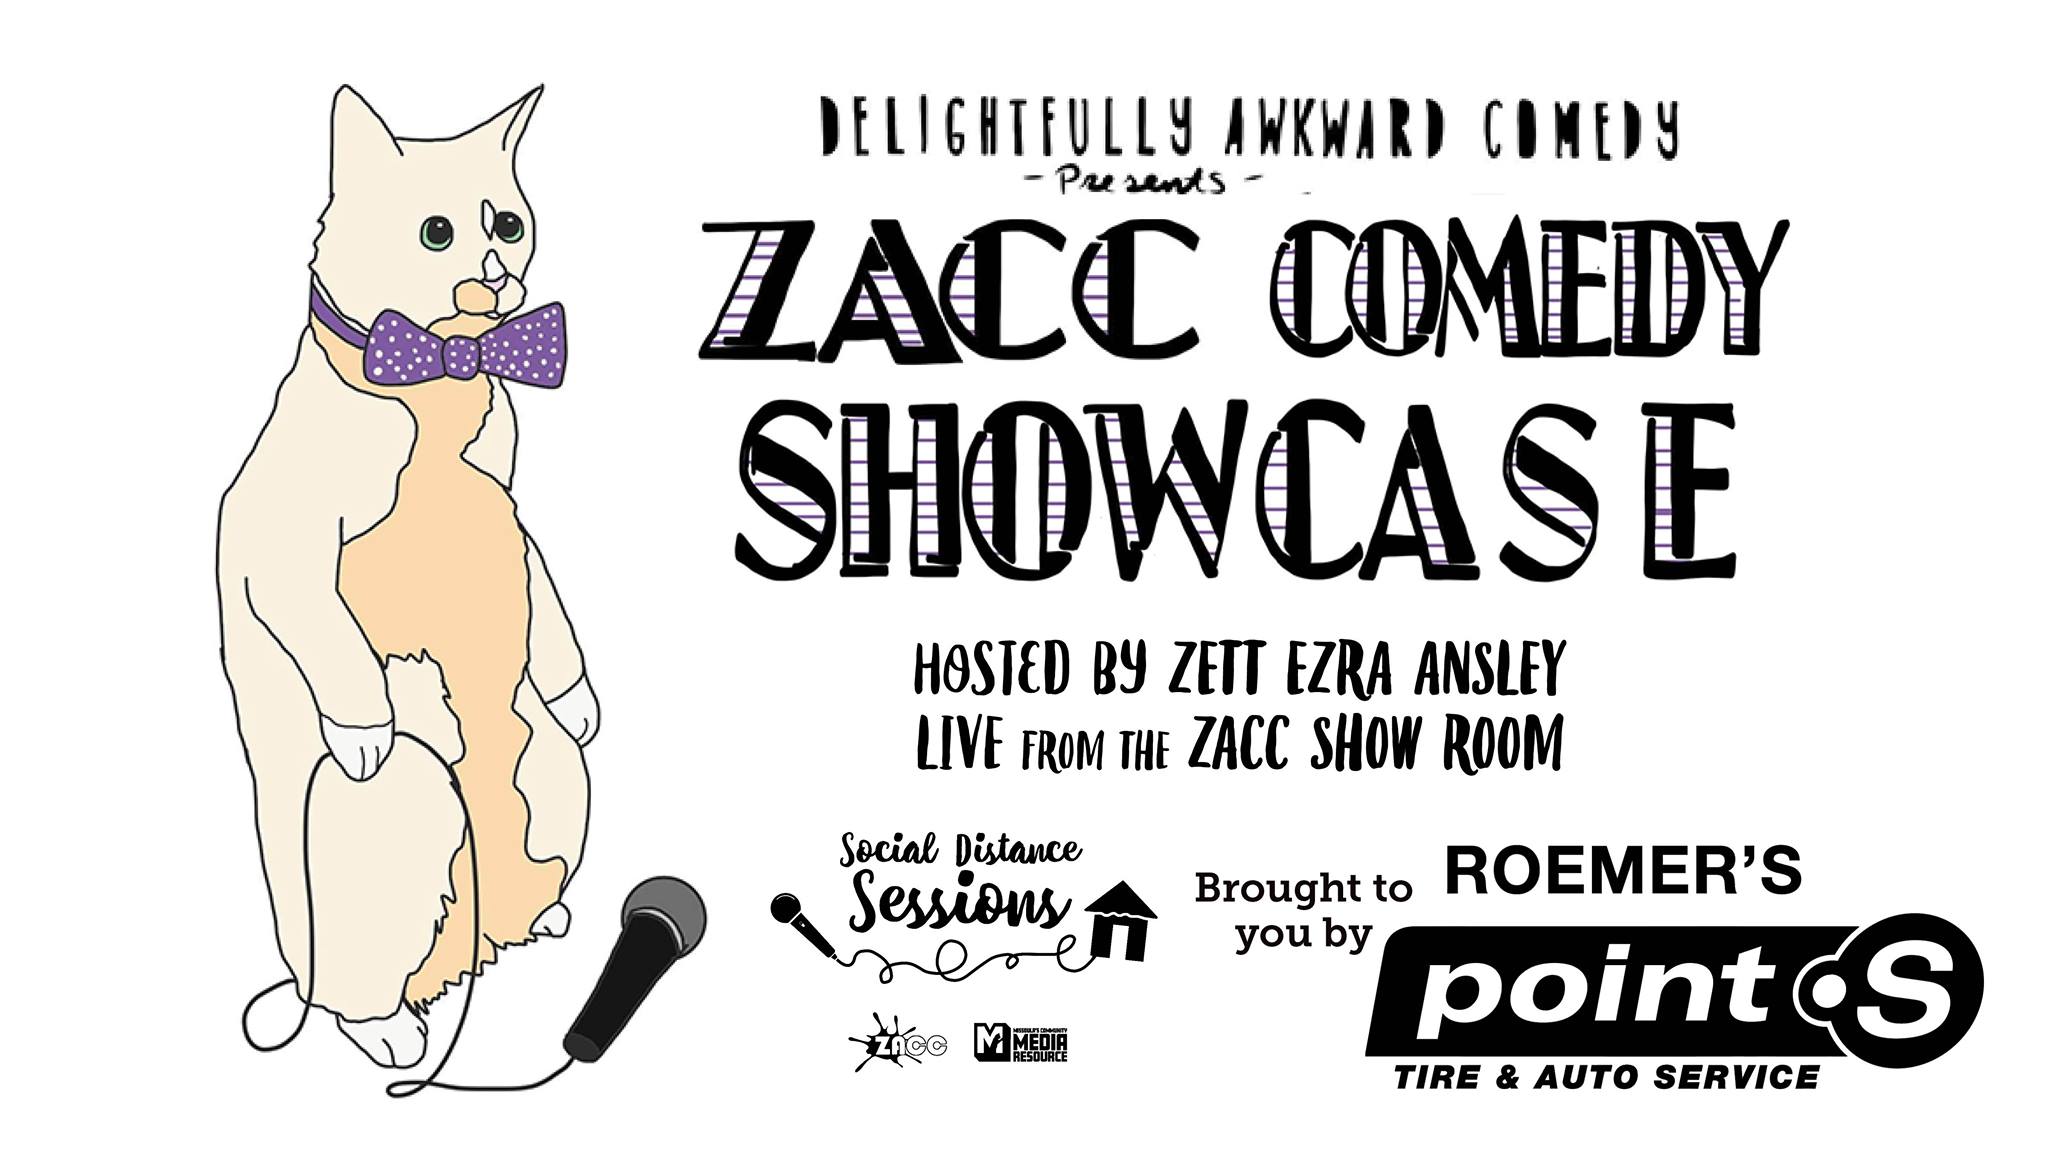 ZACC Comedy Showcase